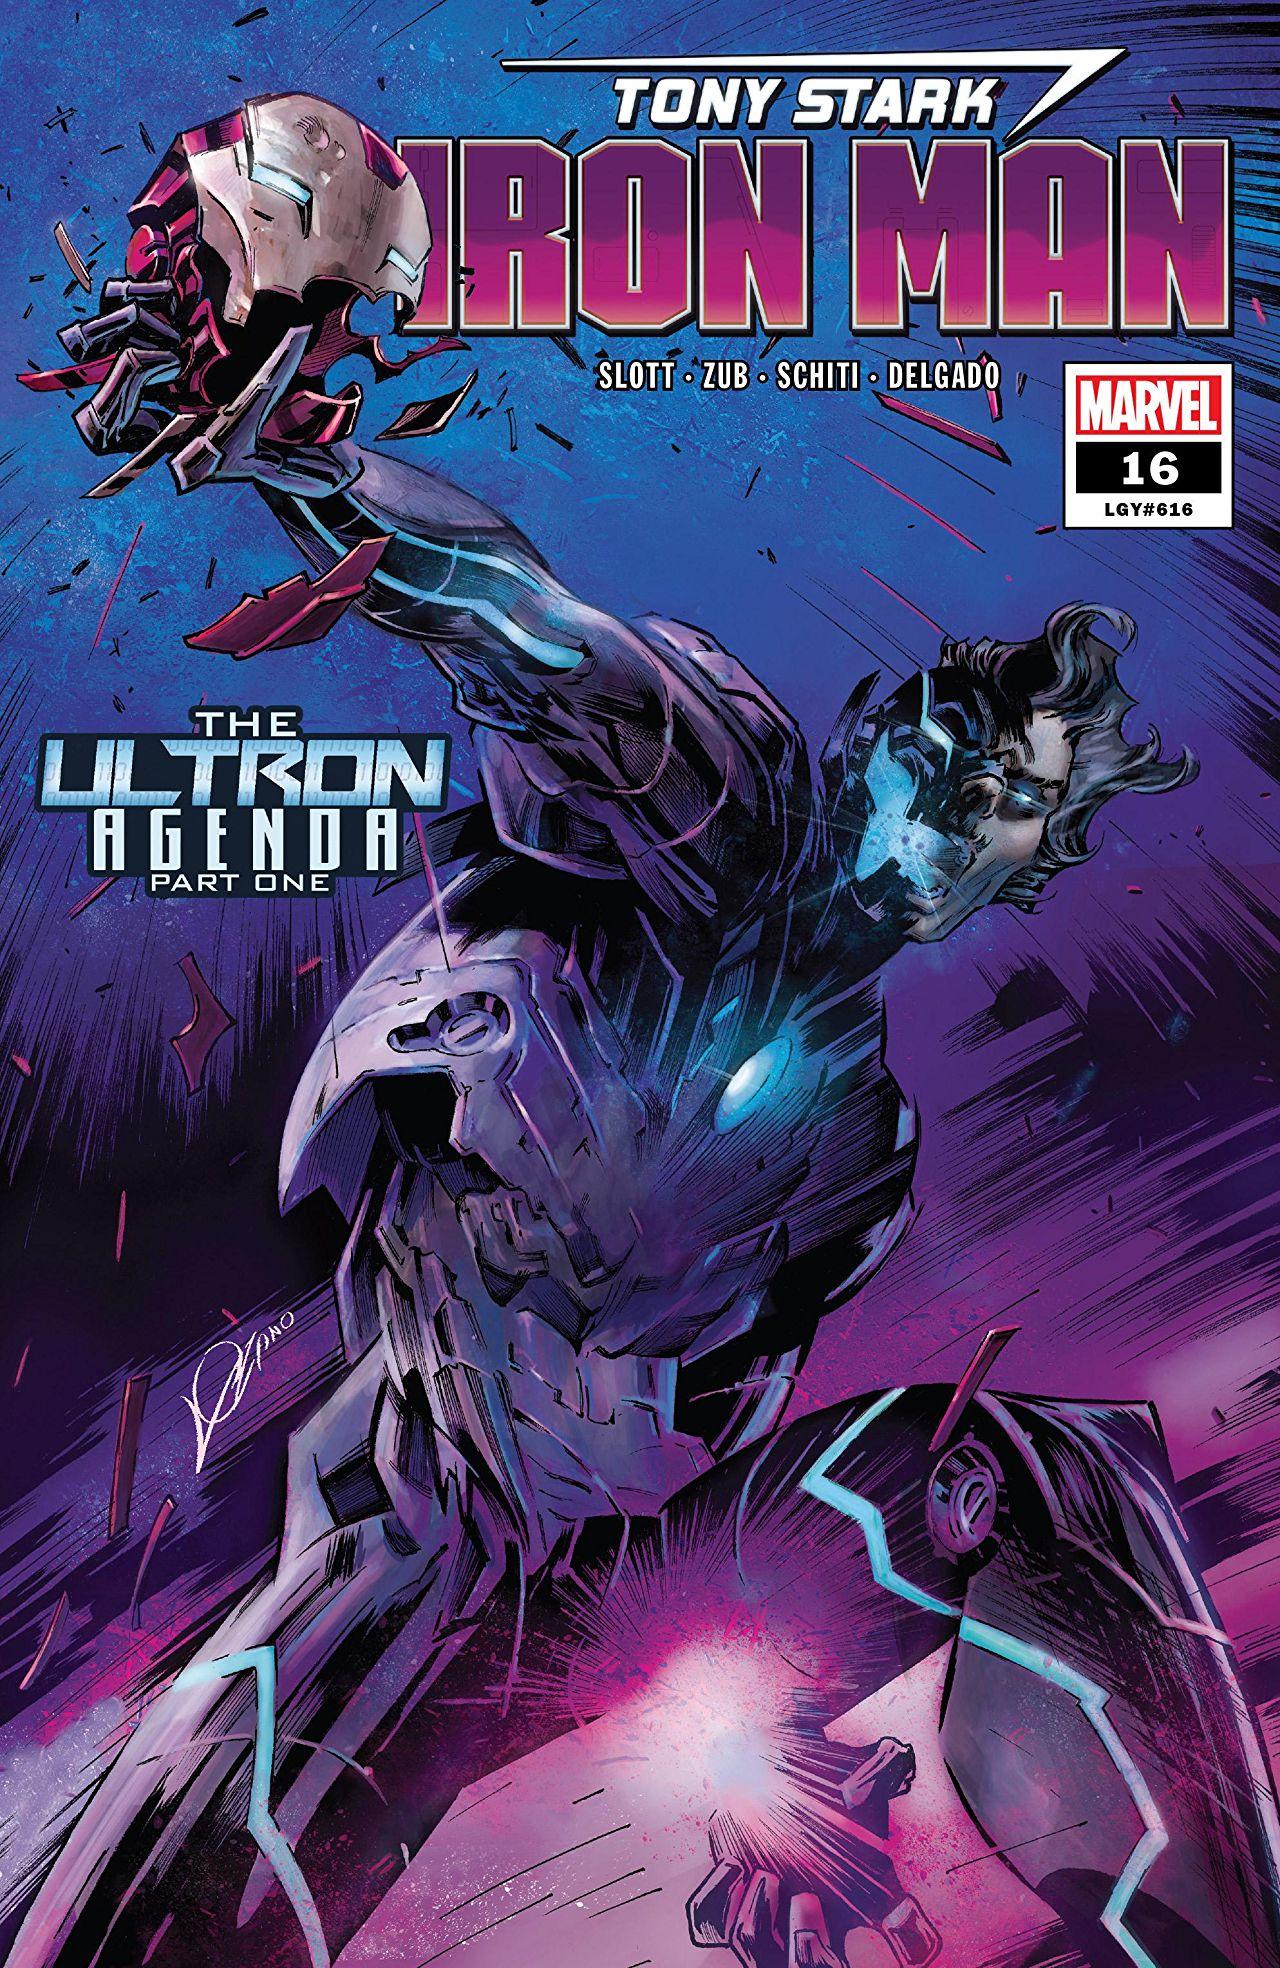 Tony Stark: Iron Man Vol. 1 #16